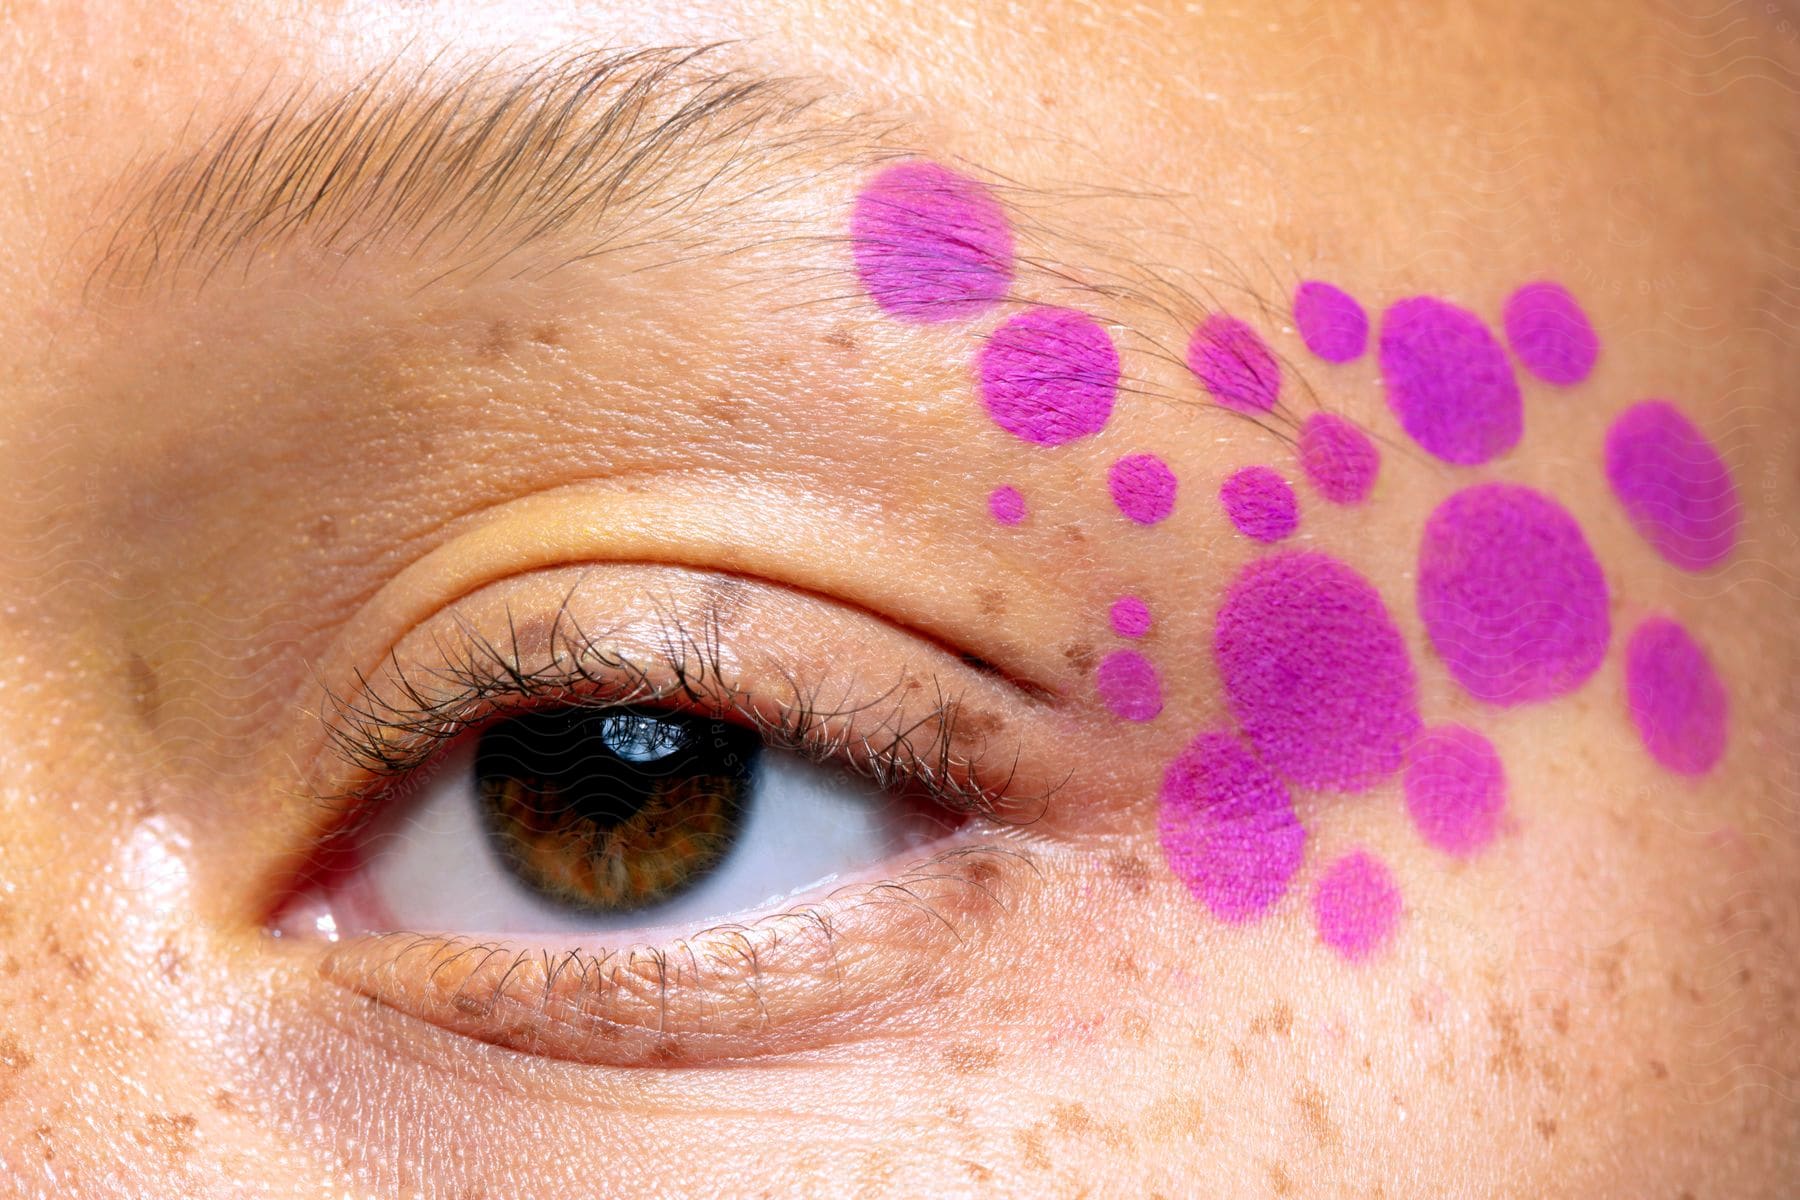 Stock photo of purple dot makeup next to a woman's eye